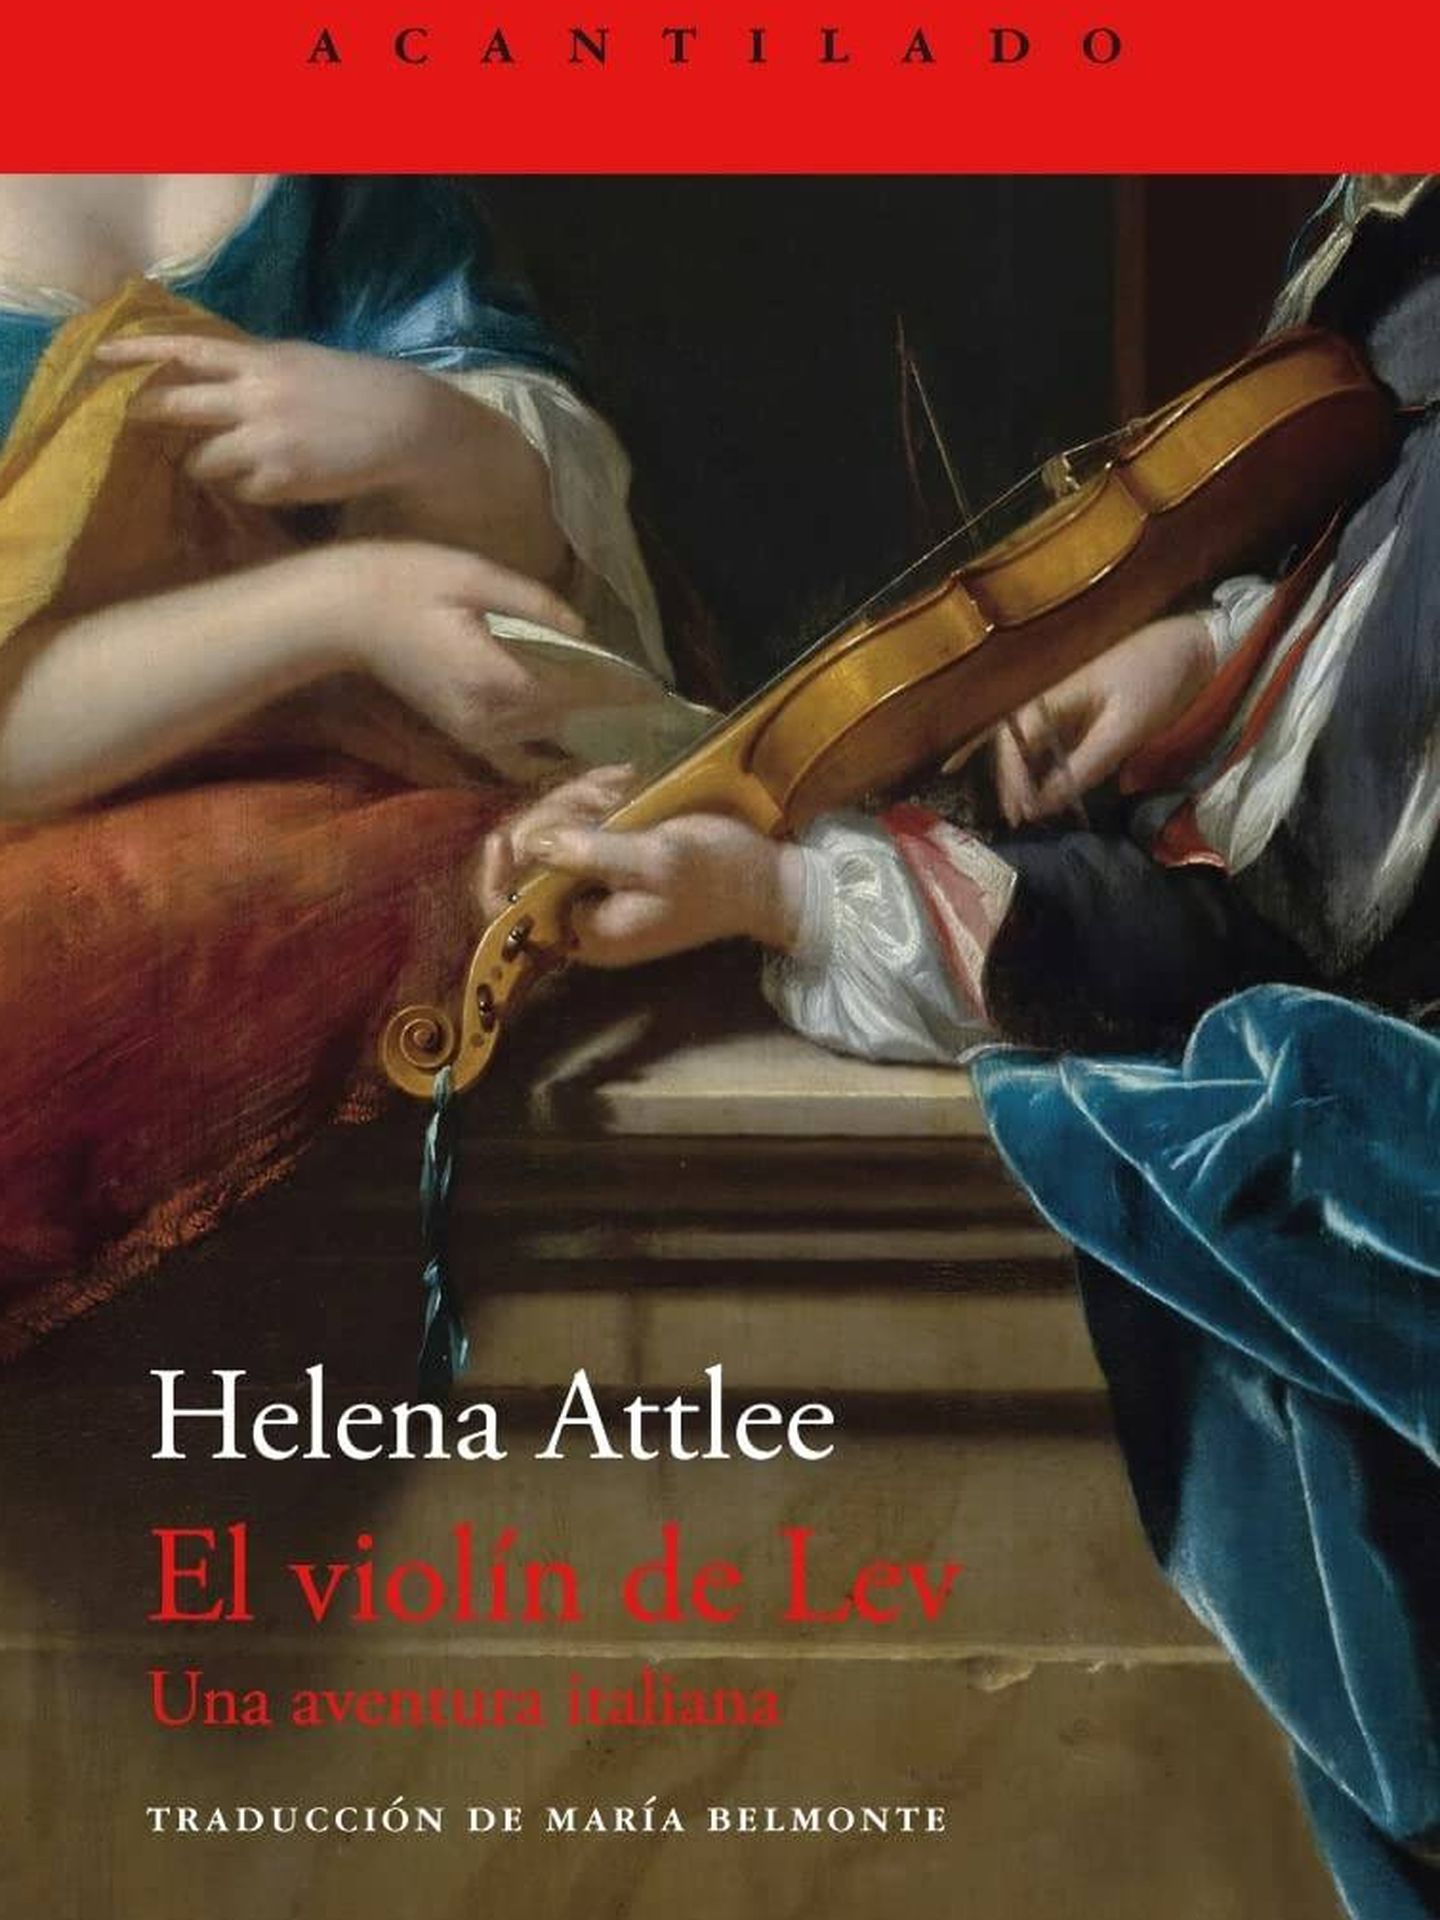 Portada de 'El violín de Lev. Una aventura italiana', de Helena Attlee.